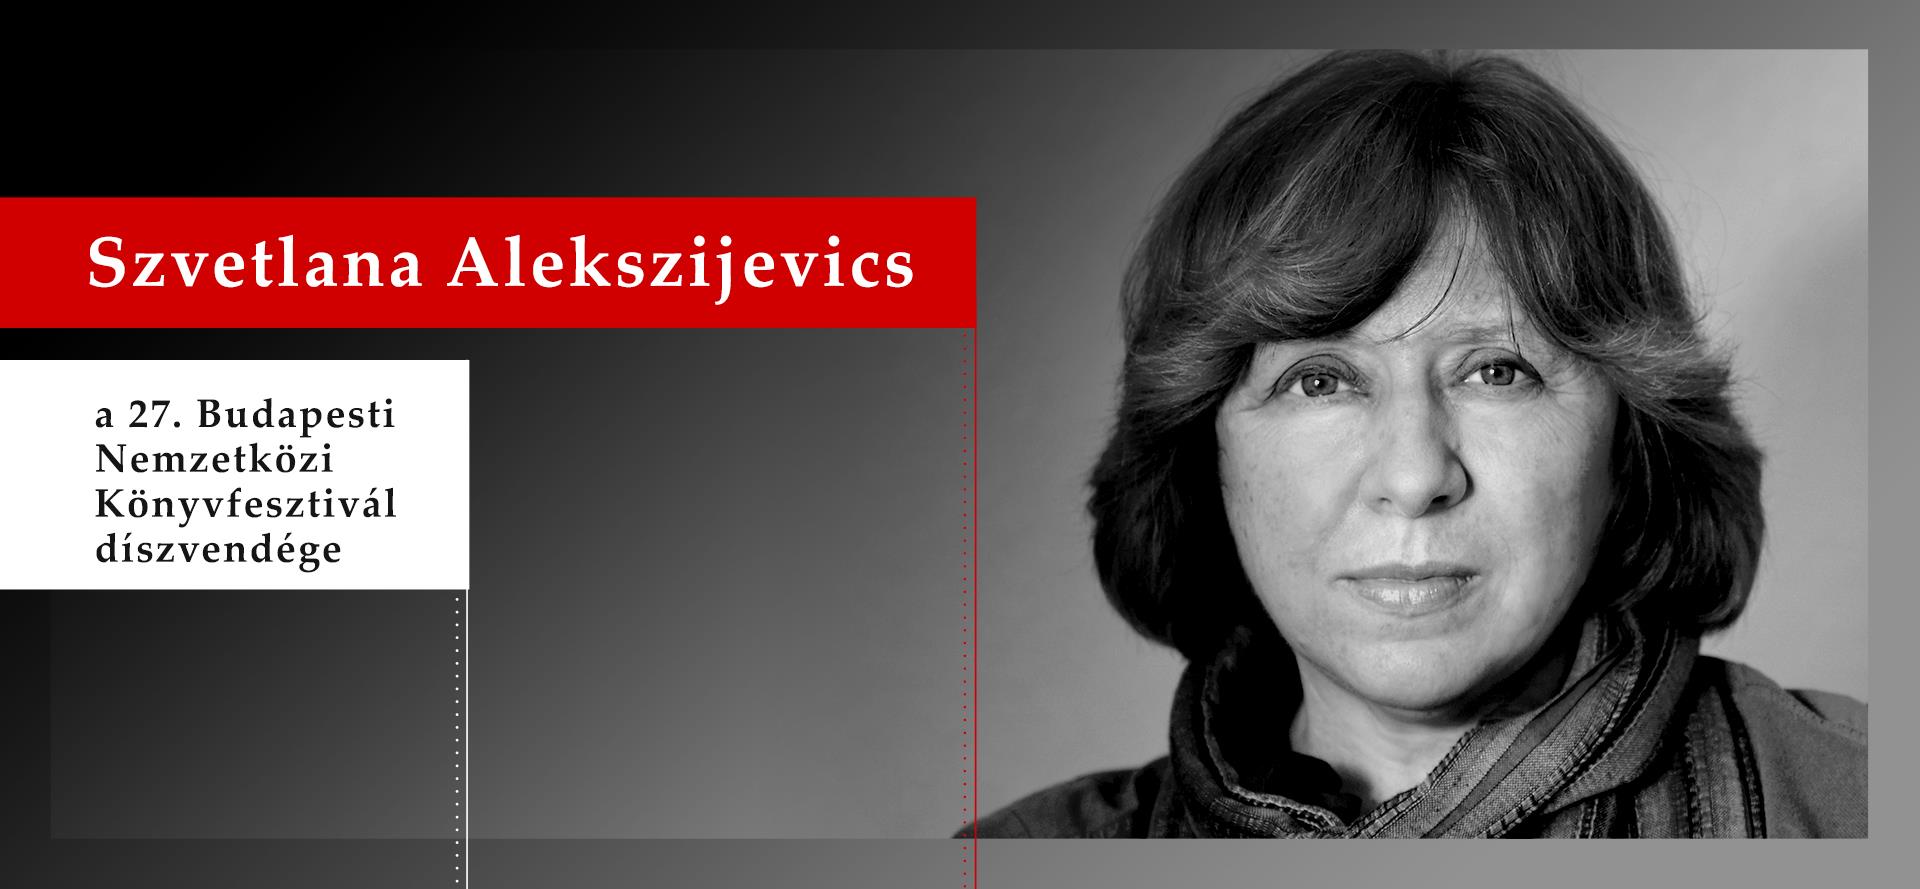 Szvetlana Alekszijevics lesz a 27. Budapesti Nemzetközi Könyvfesztivál díszvendége